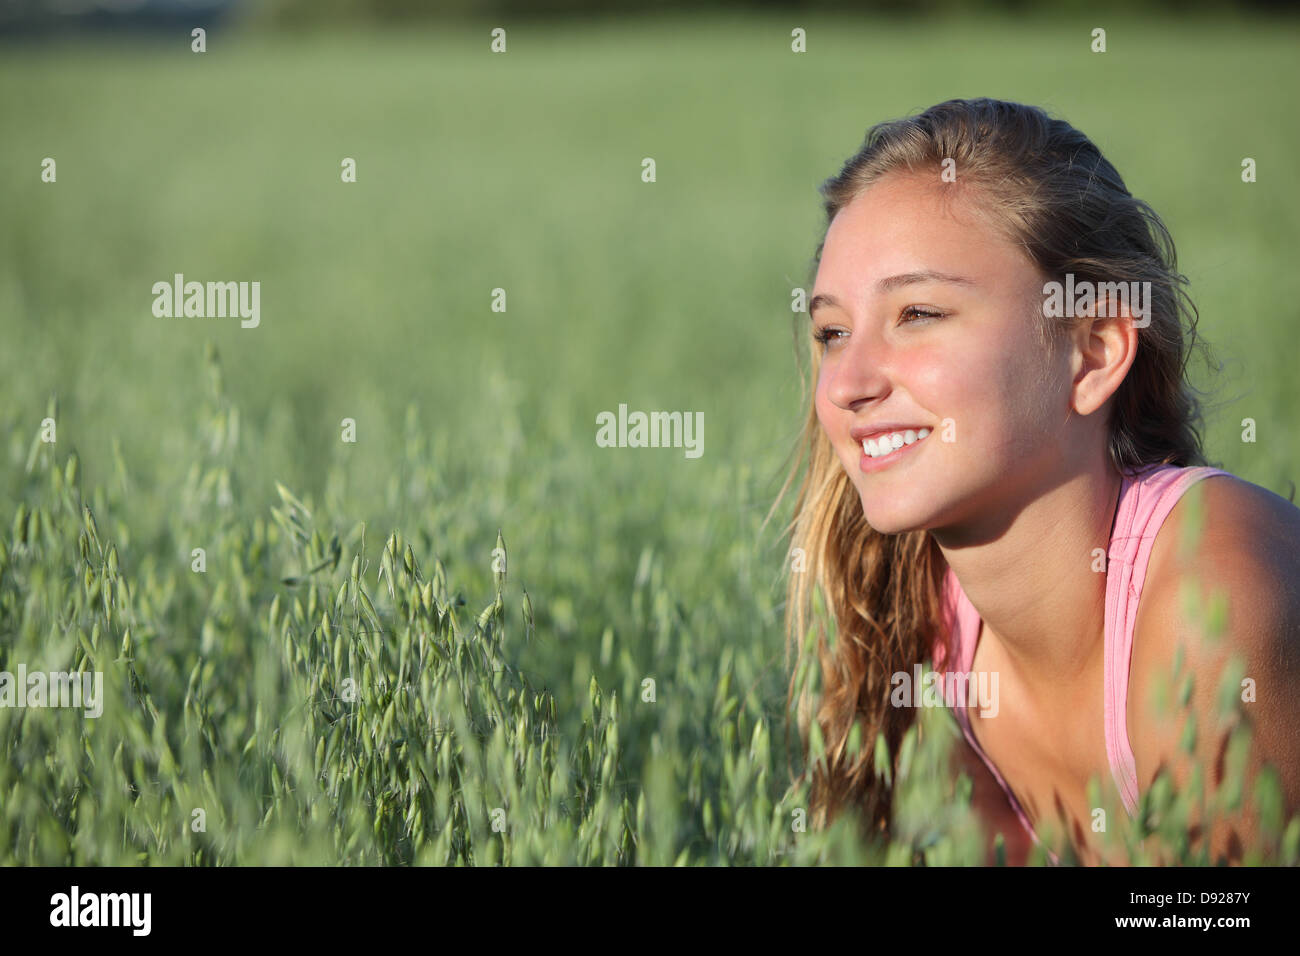 Primo piano di una bella ragazza adolescente sorridente in un unfocused verde prato di avena Foto Stock